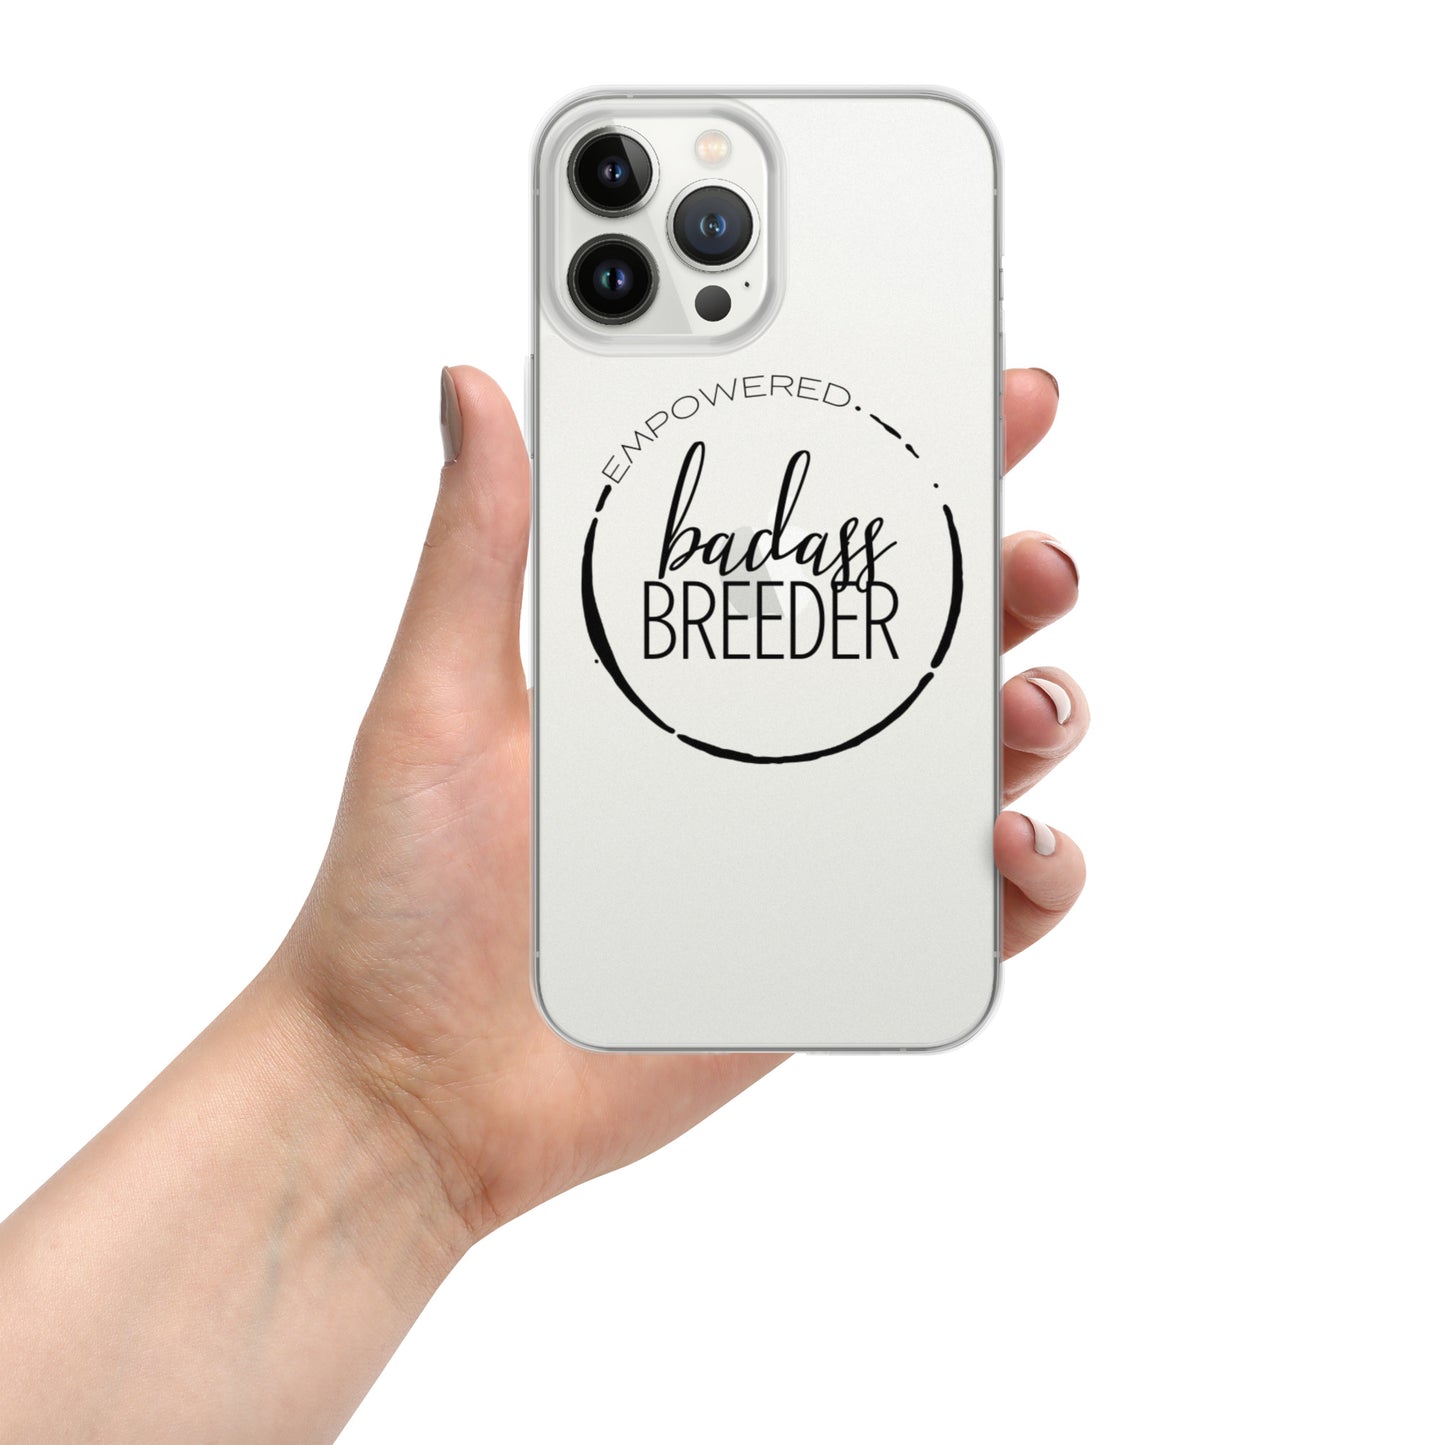 Badass Breeder iPhone Case